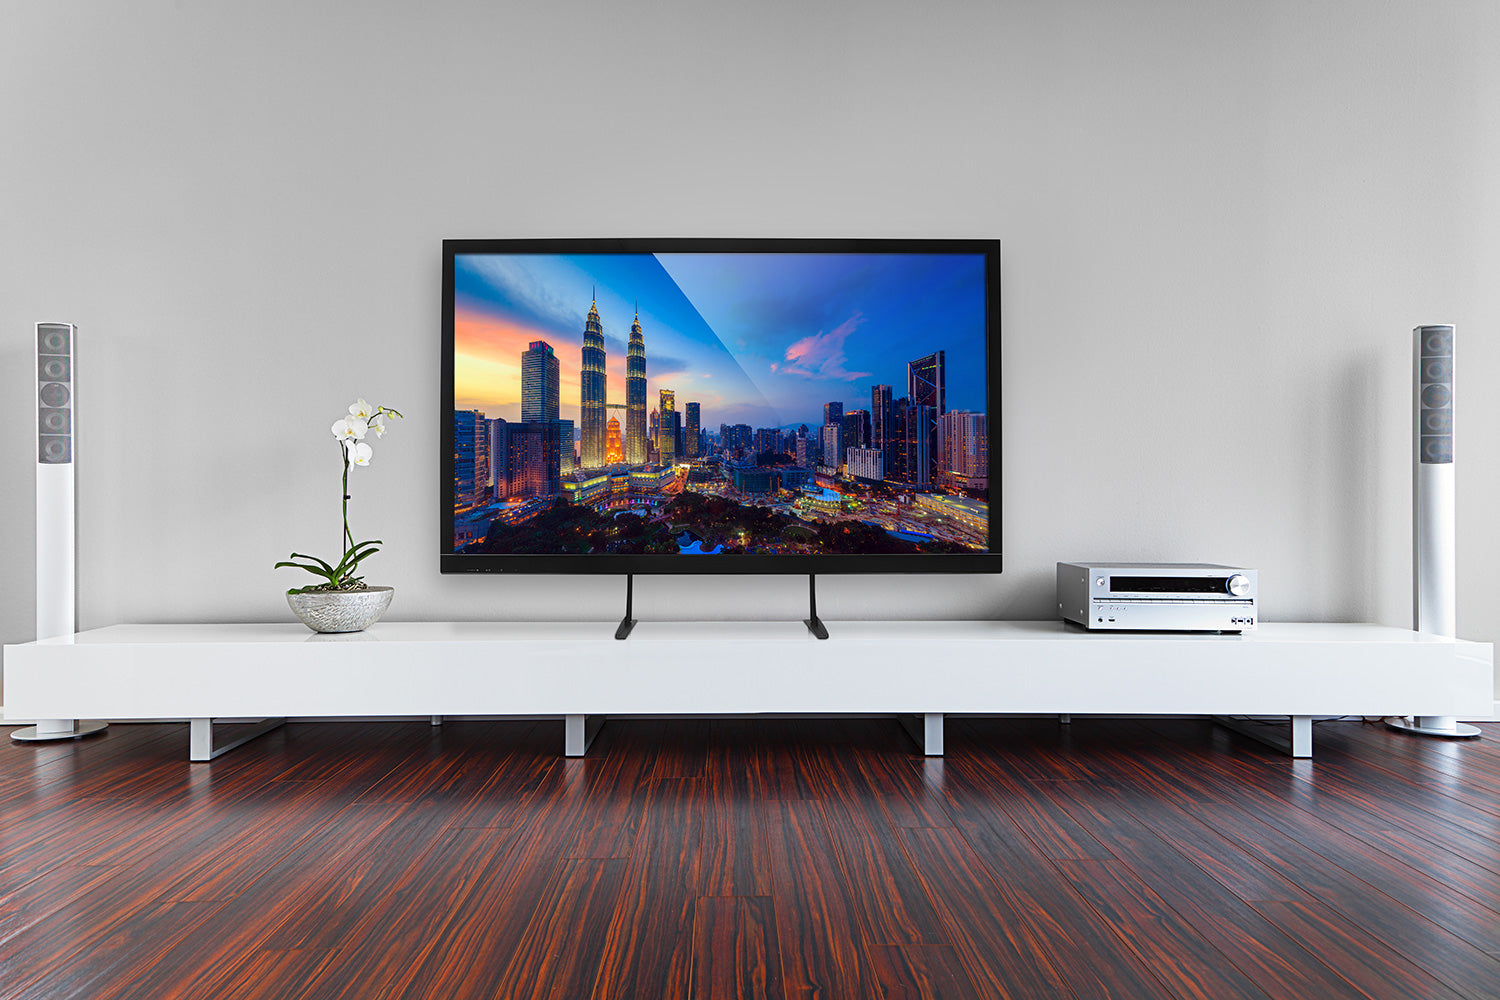 Best TV Size For Room, Blog